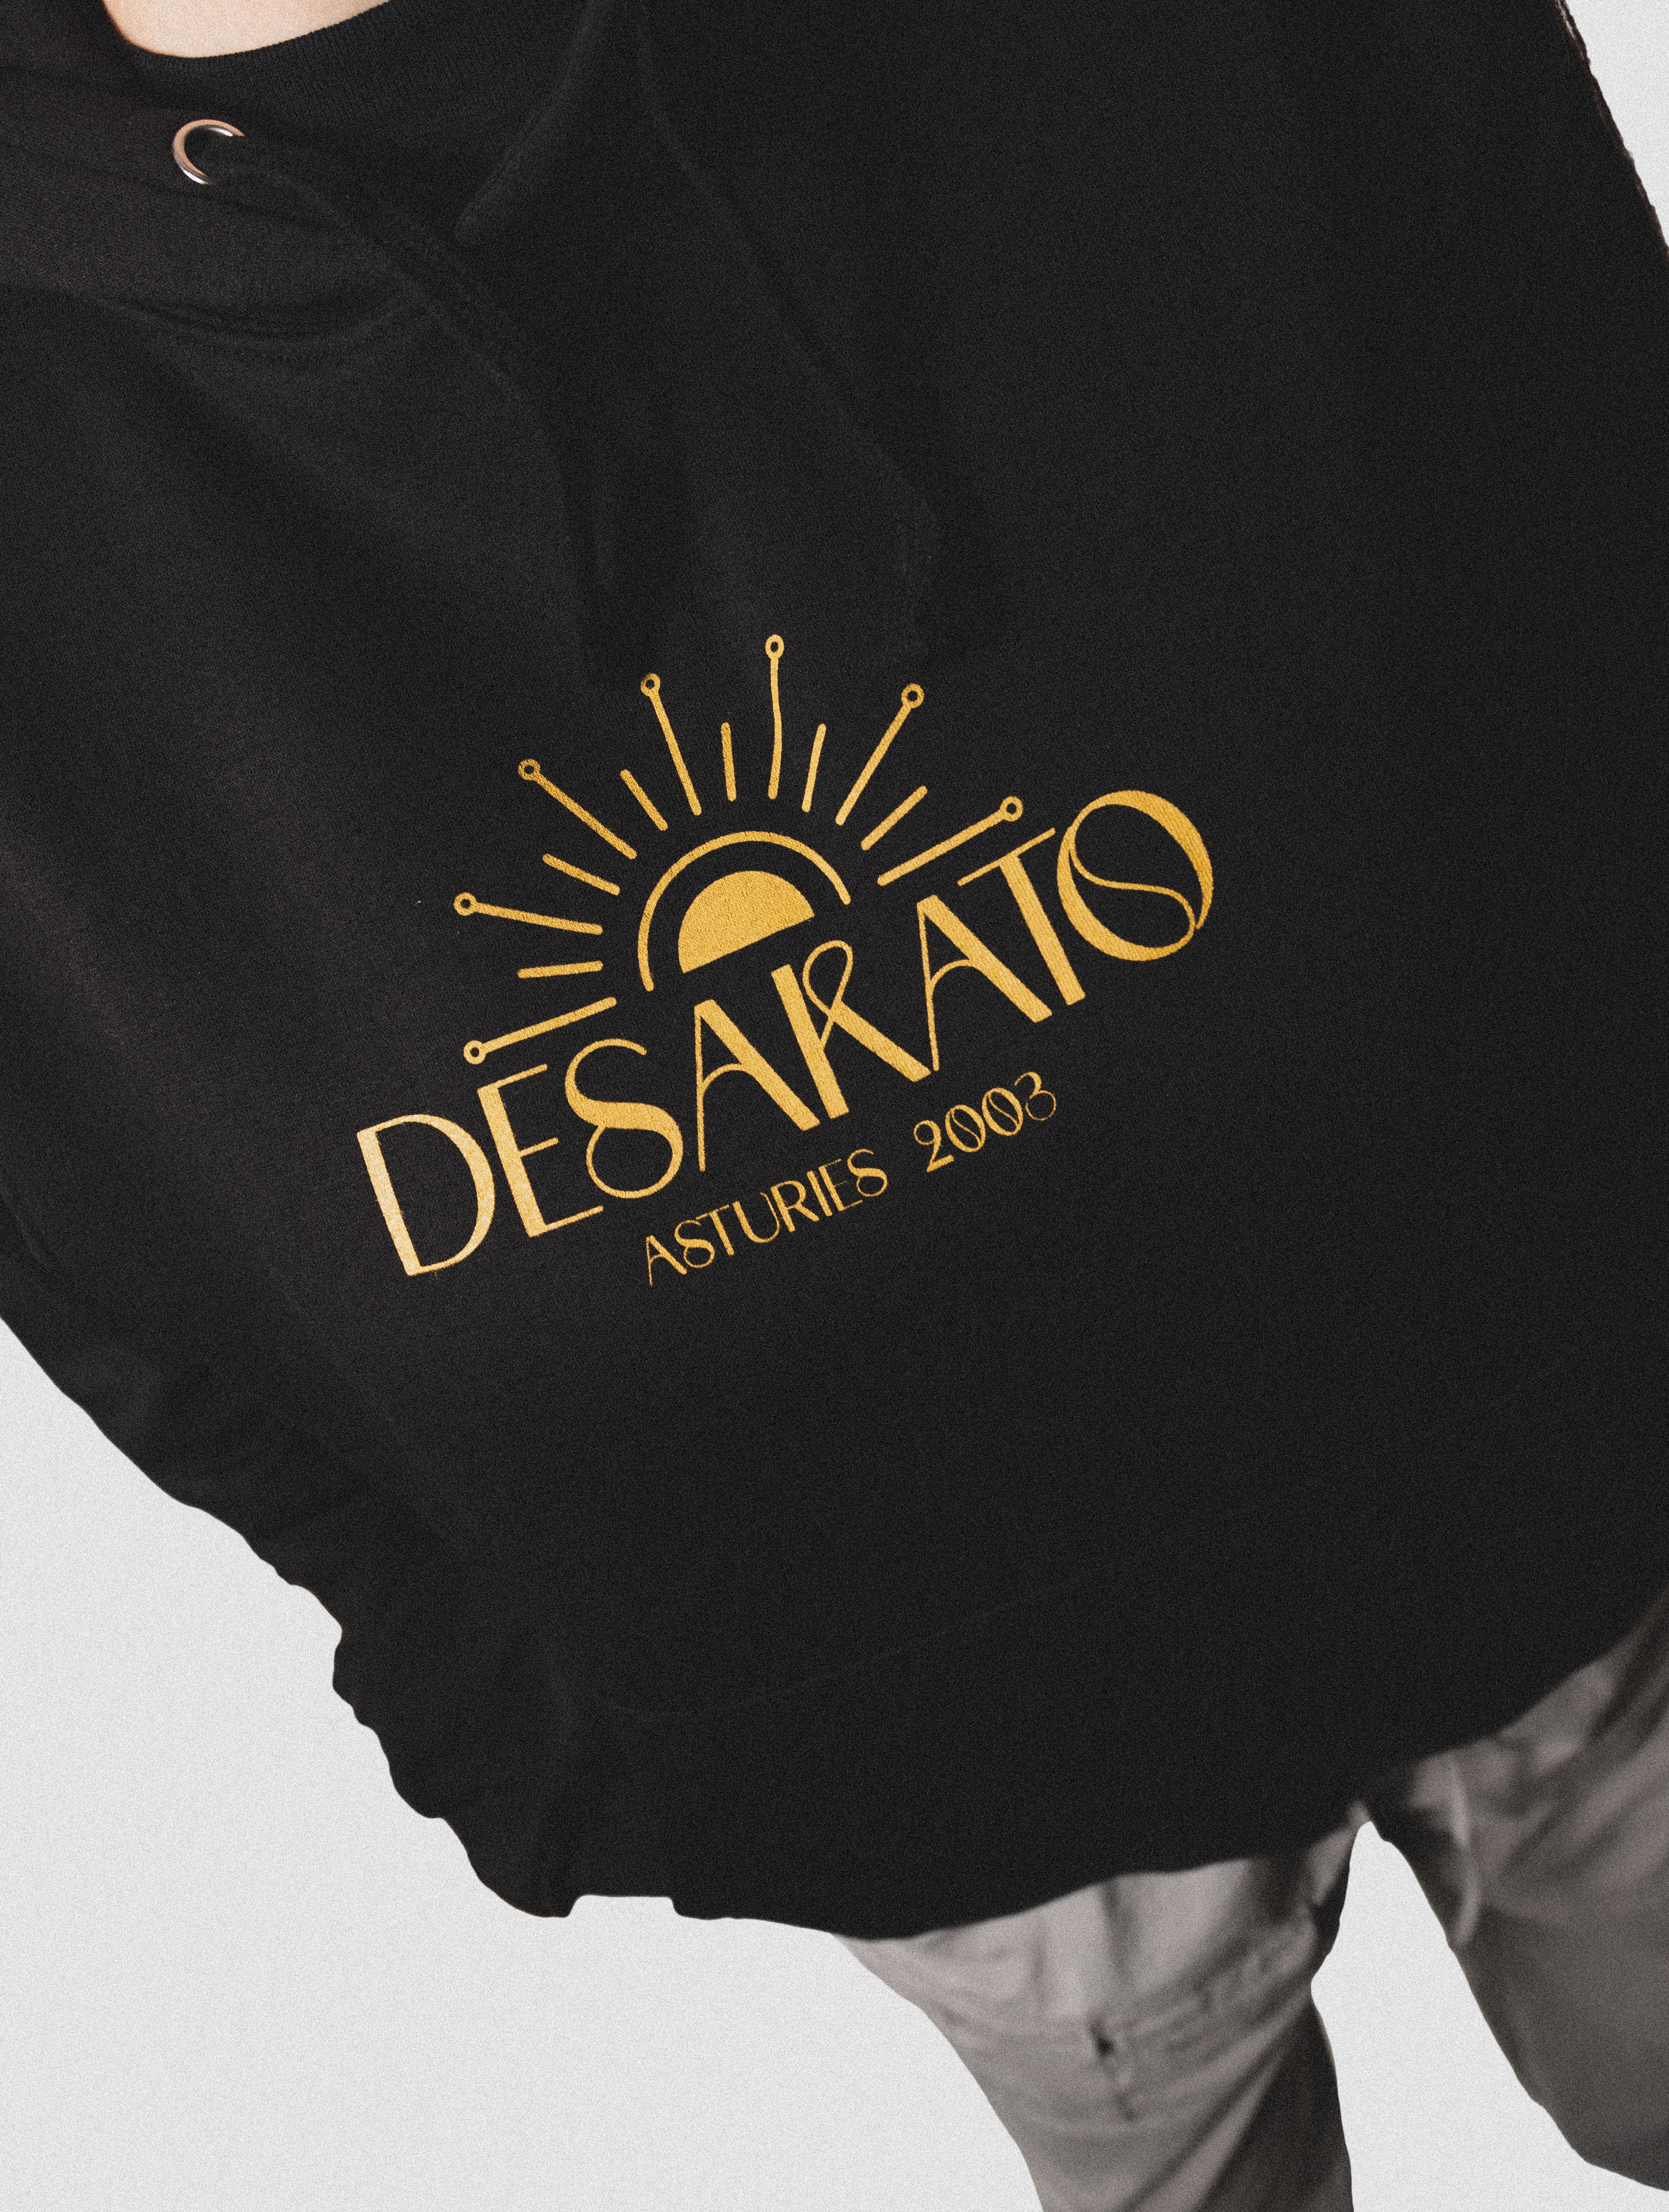 desakato-merch-design-ingrave-graphic-4